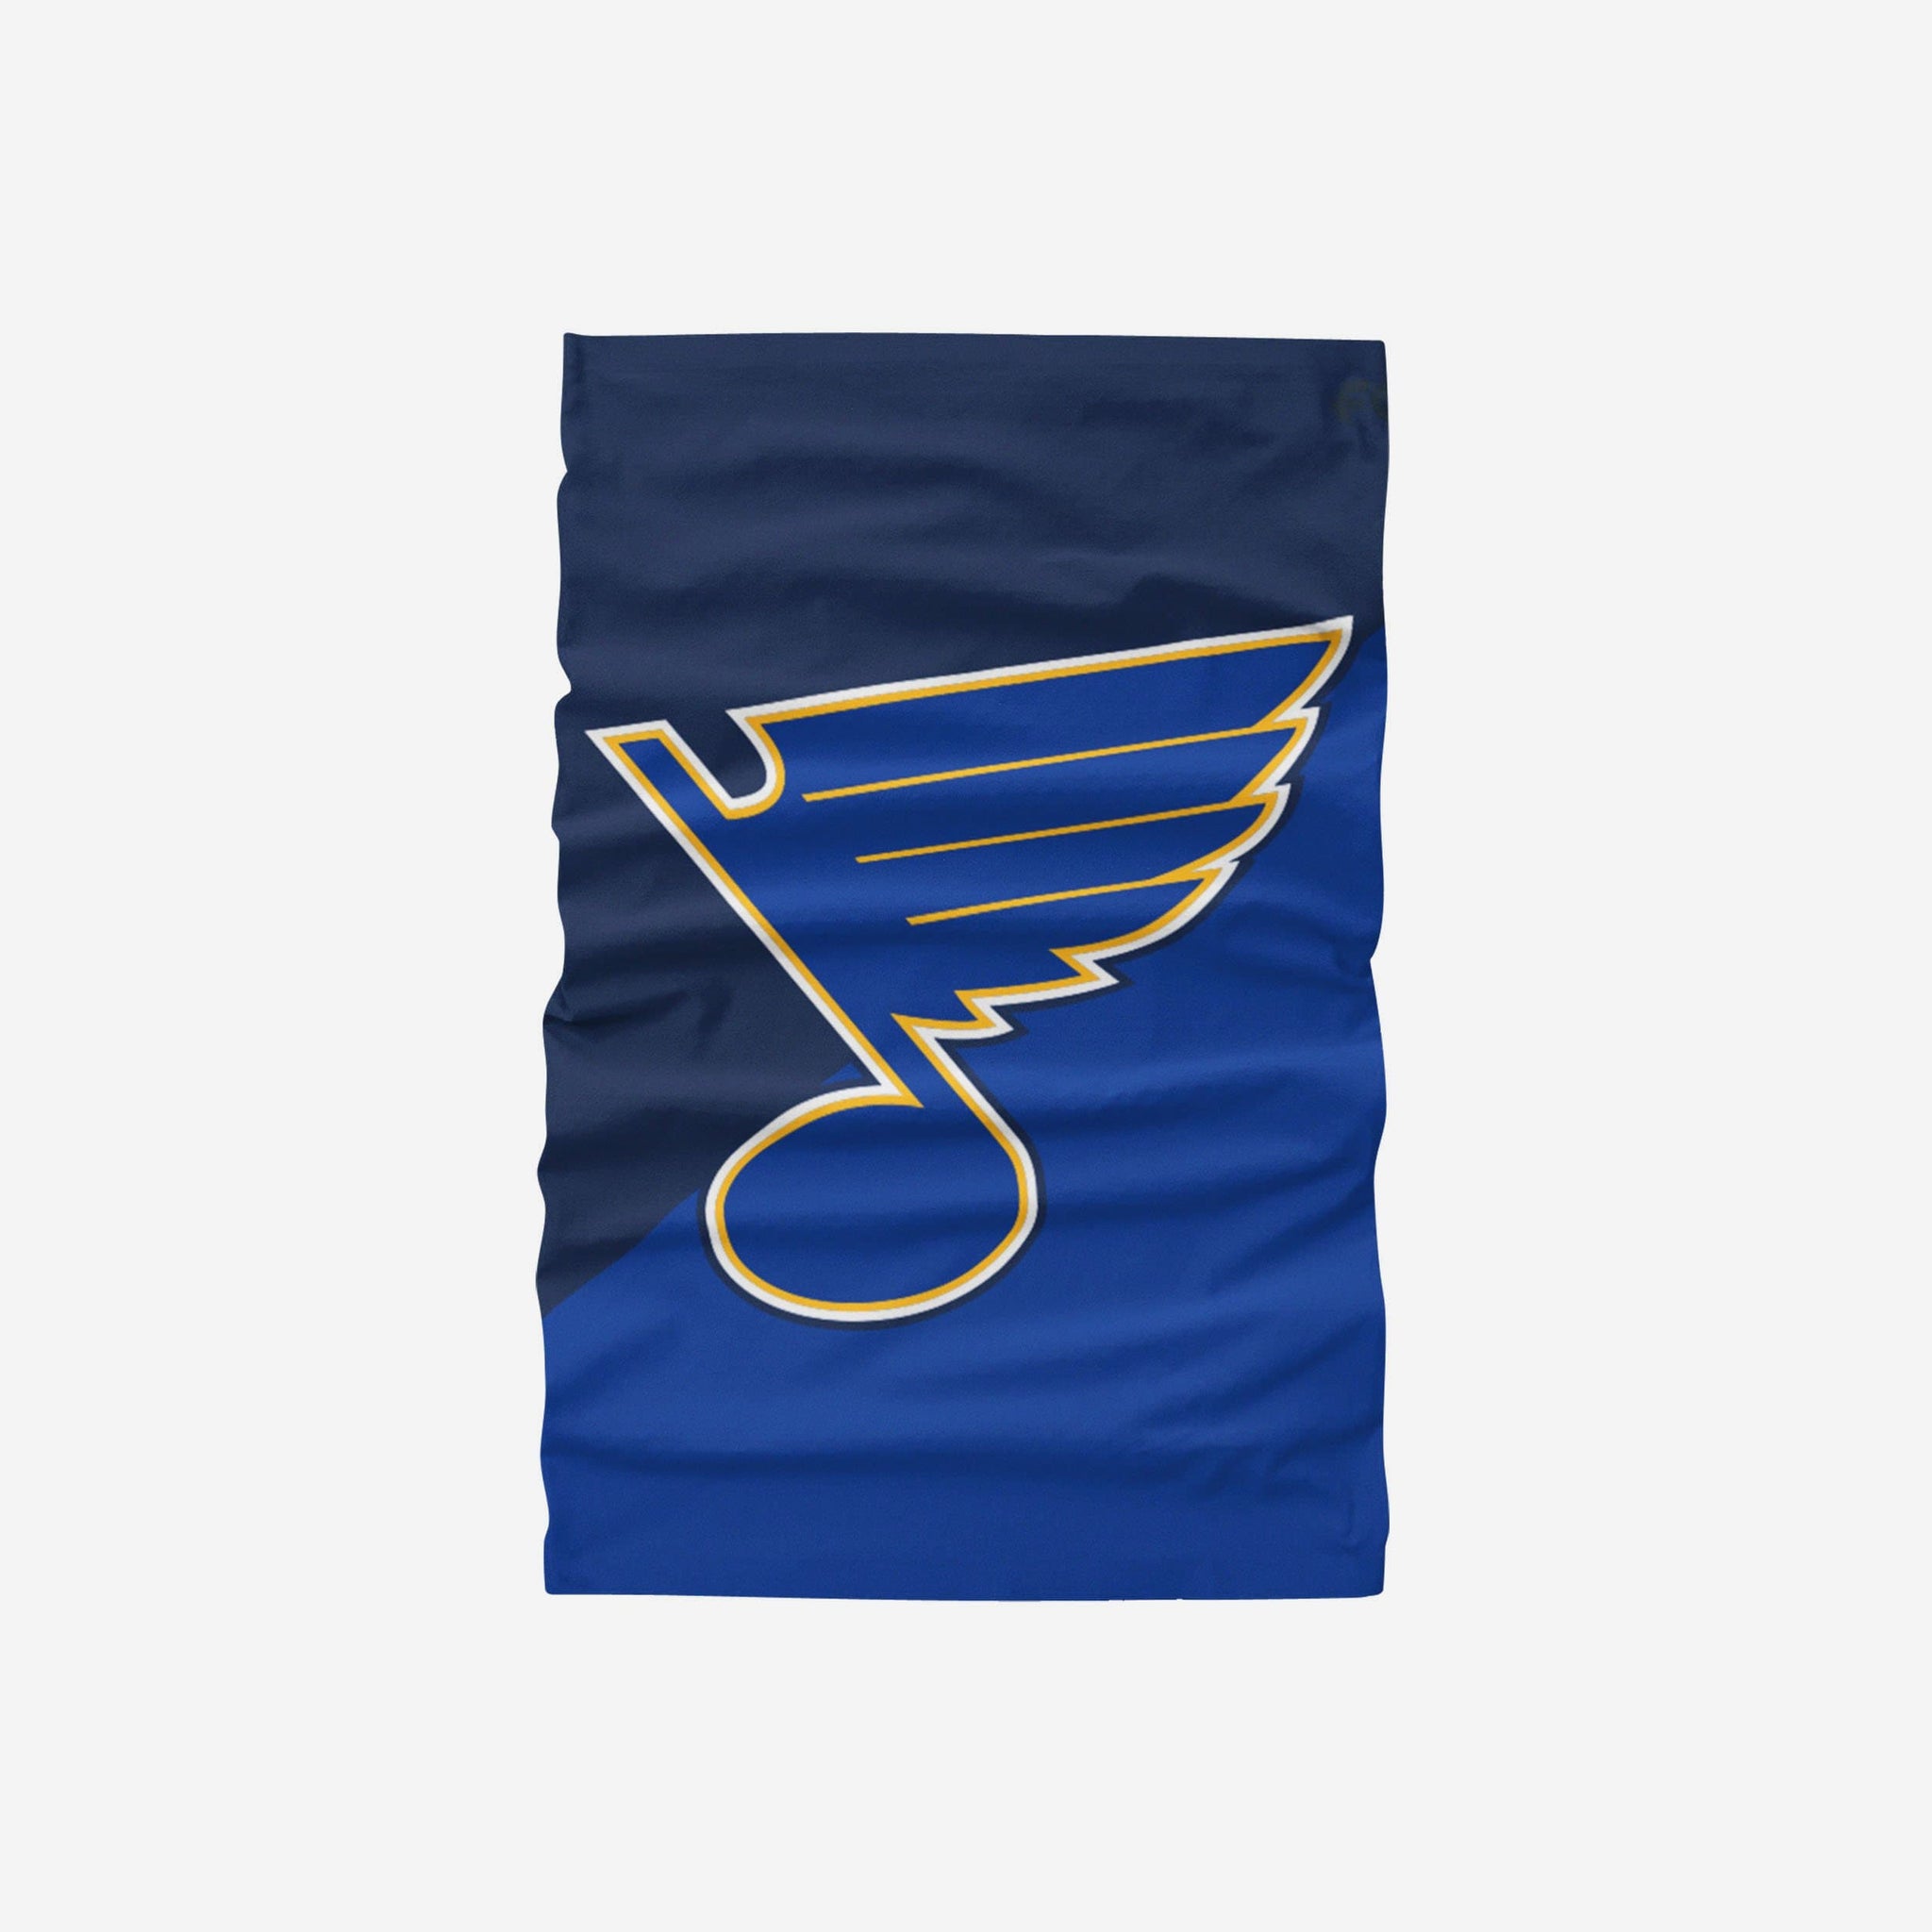 St. Louis blues flag